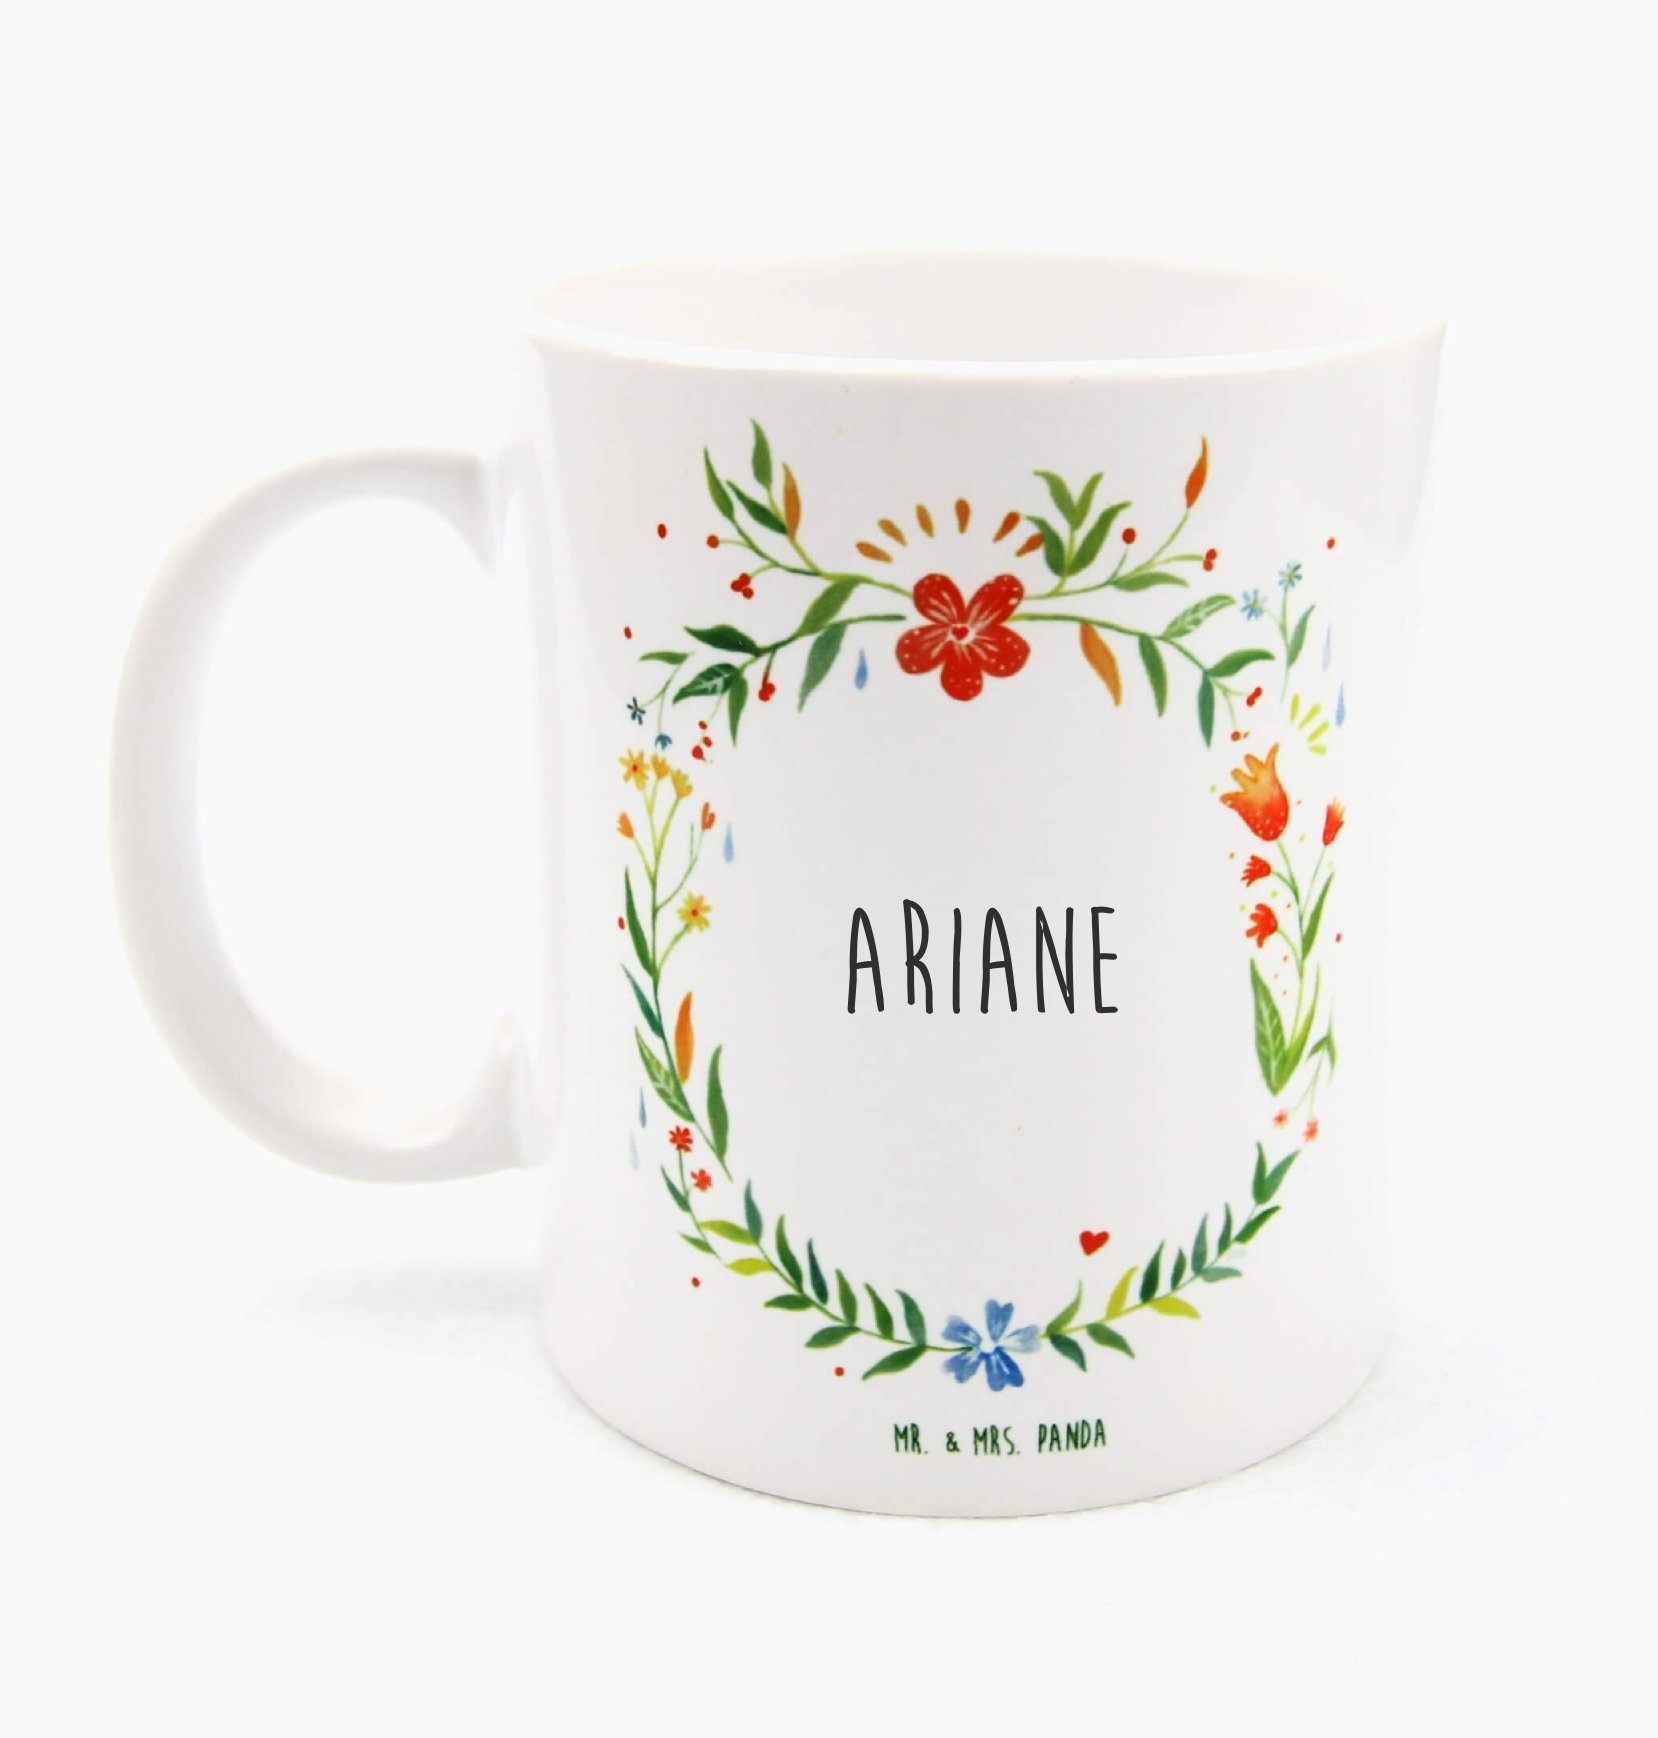 Mr. & Mrs. Panda Tasse Ariane - Geschenk, Kaffeetasse, Geschenk Tasse, Porzellantasse, Teeta, Keramik